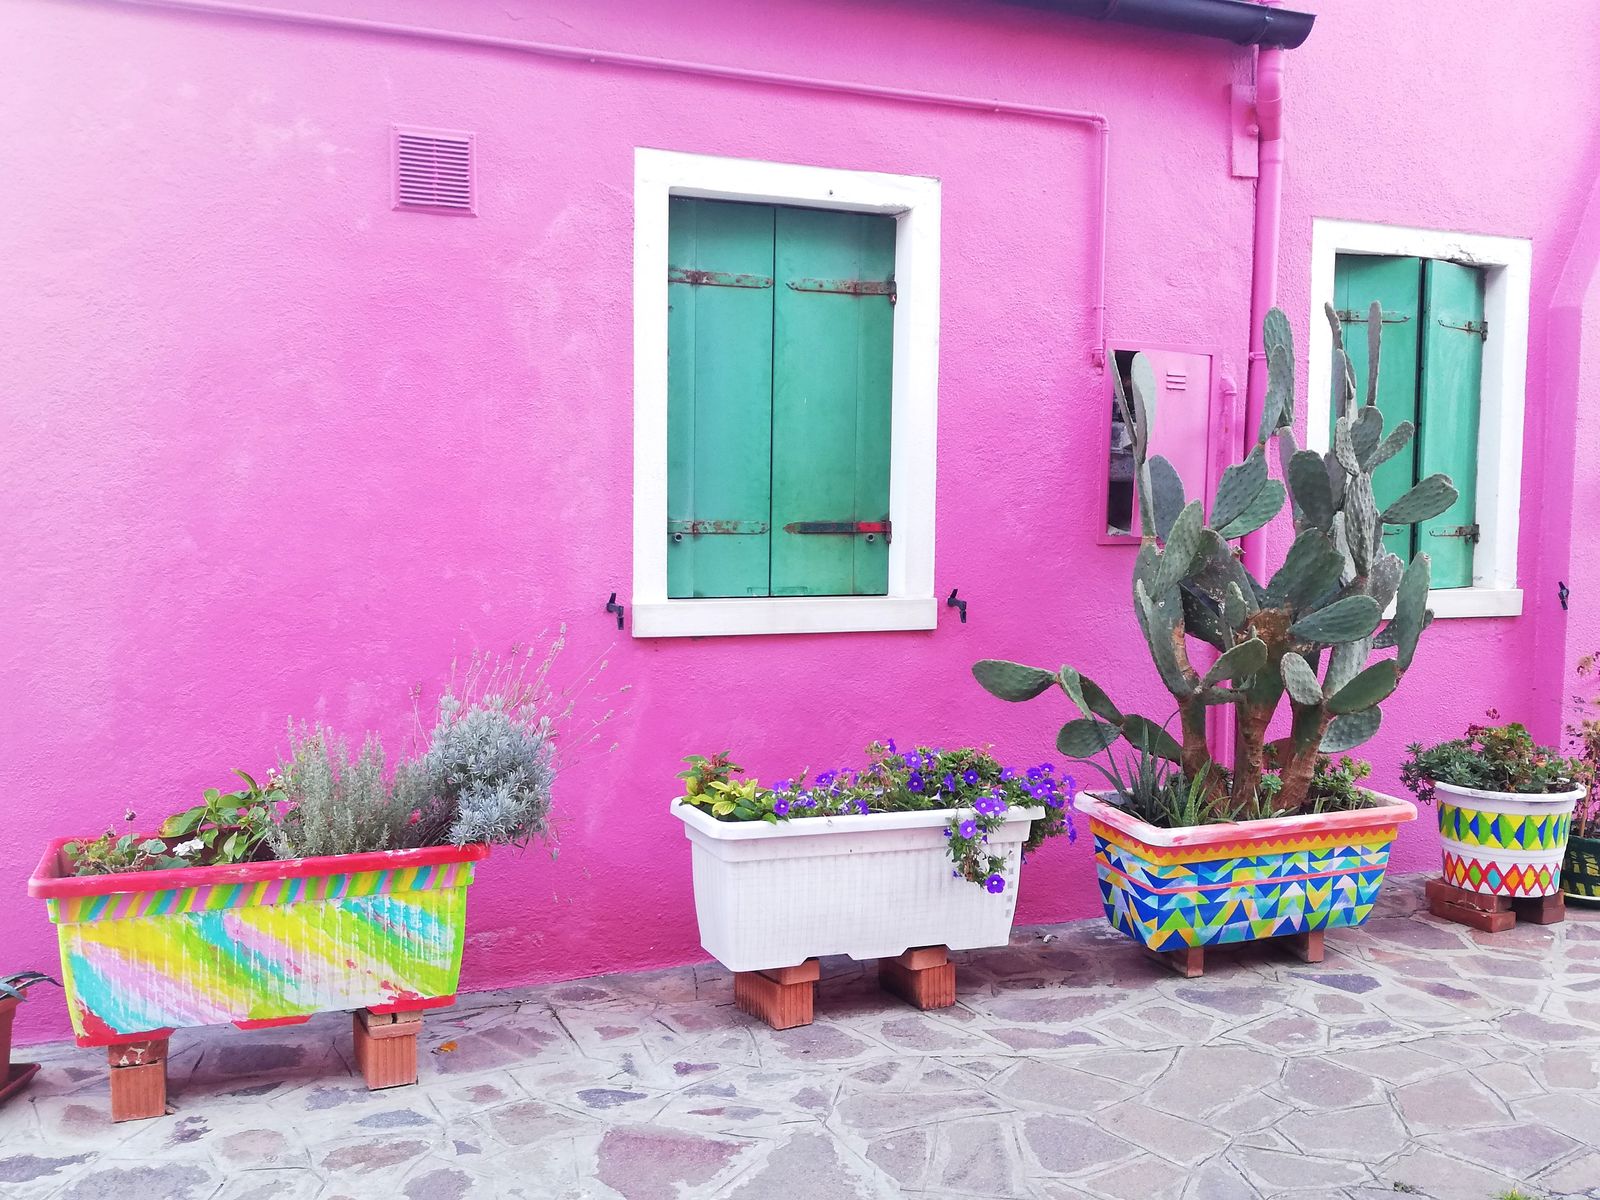 Visiter Burano et ses maisons colorées.jpg